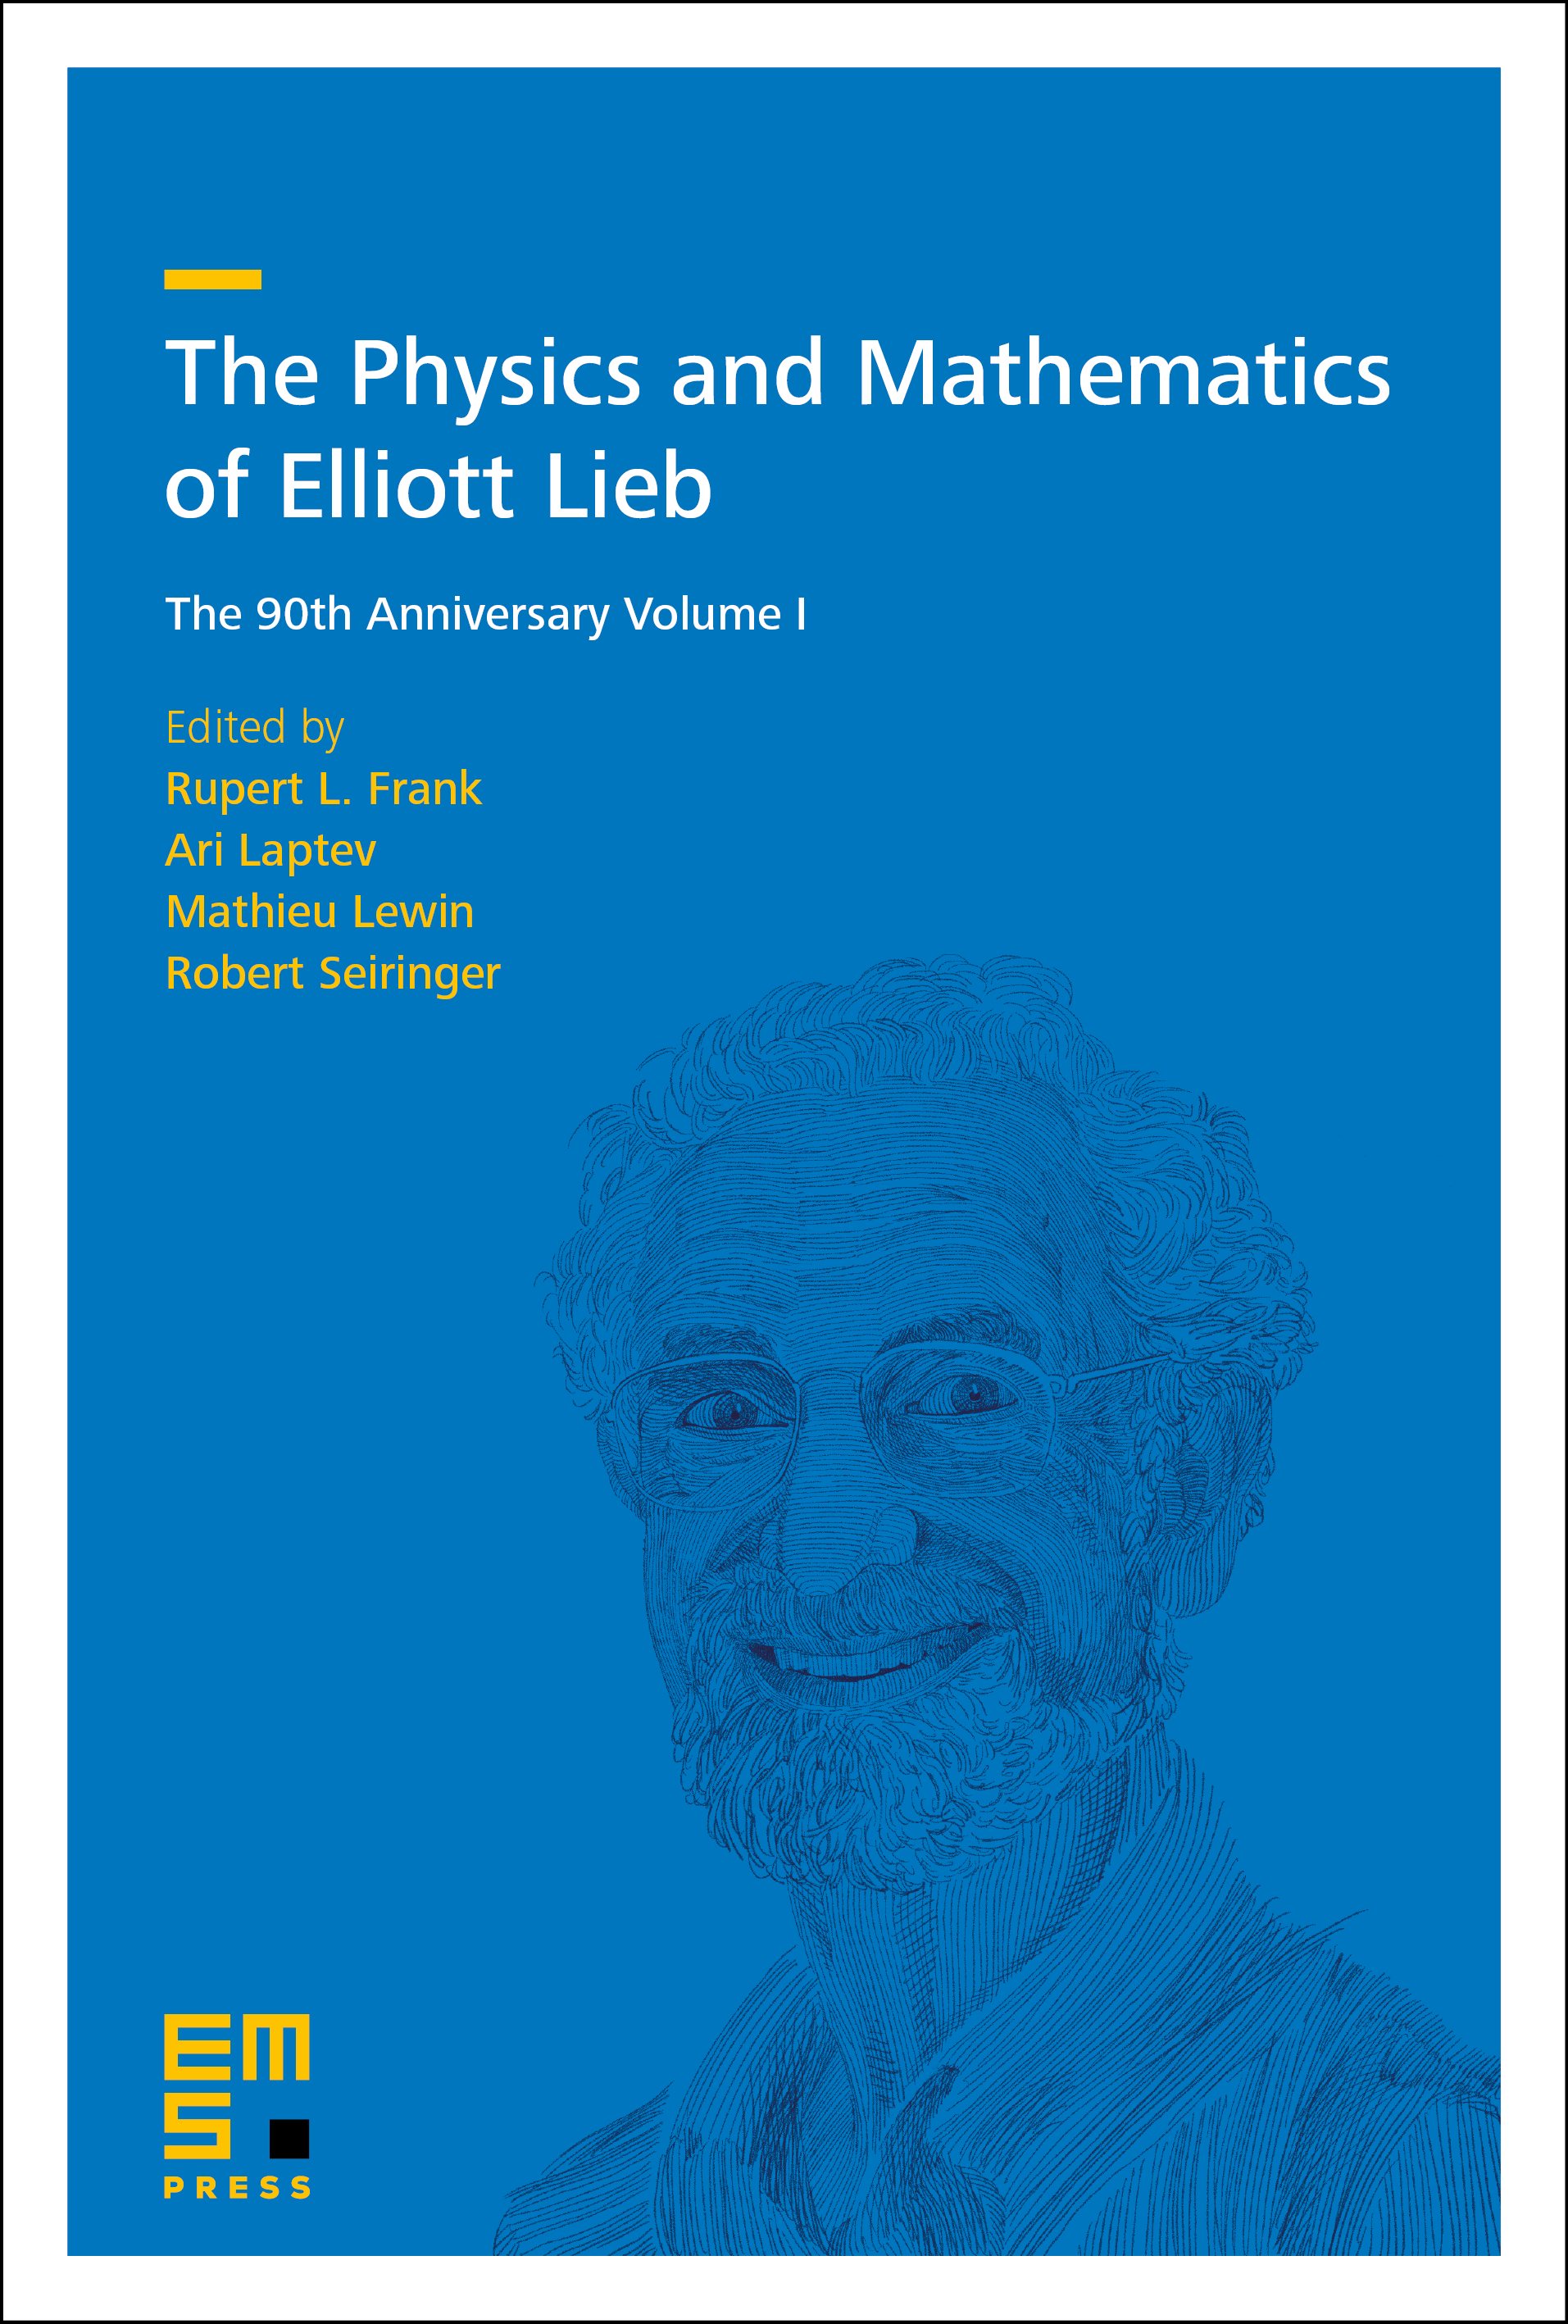 Rearrangement methods in the work of Elliott Lieb cover